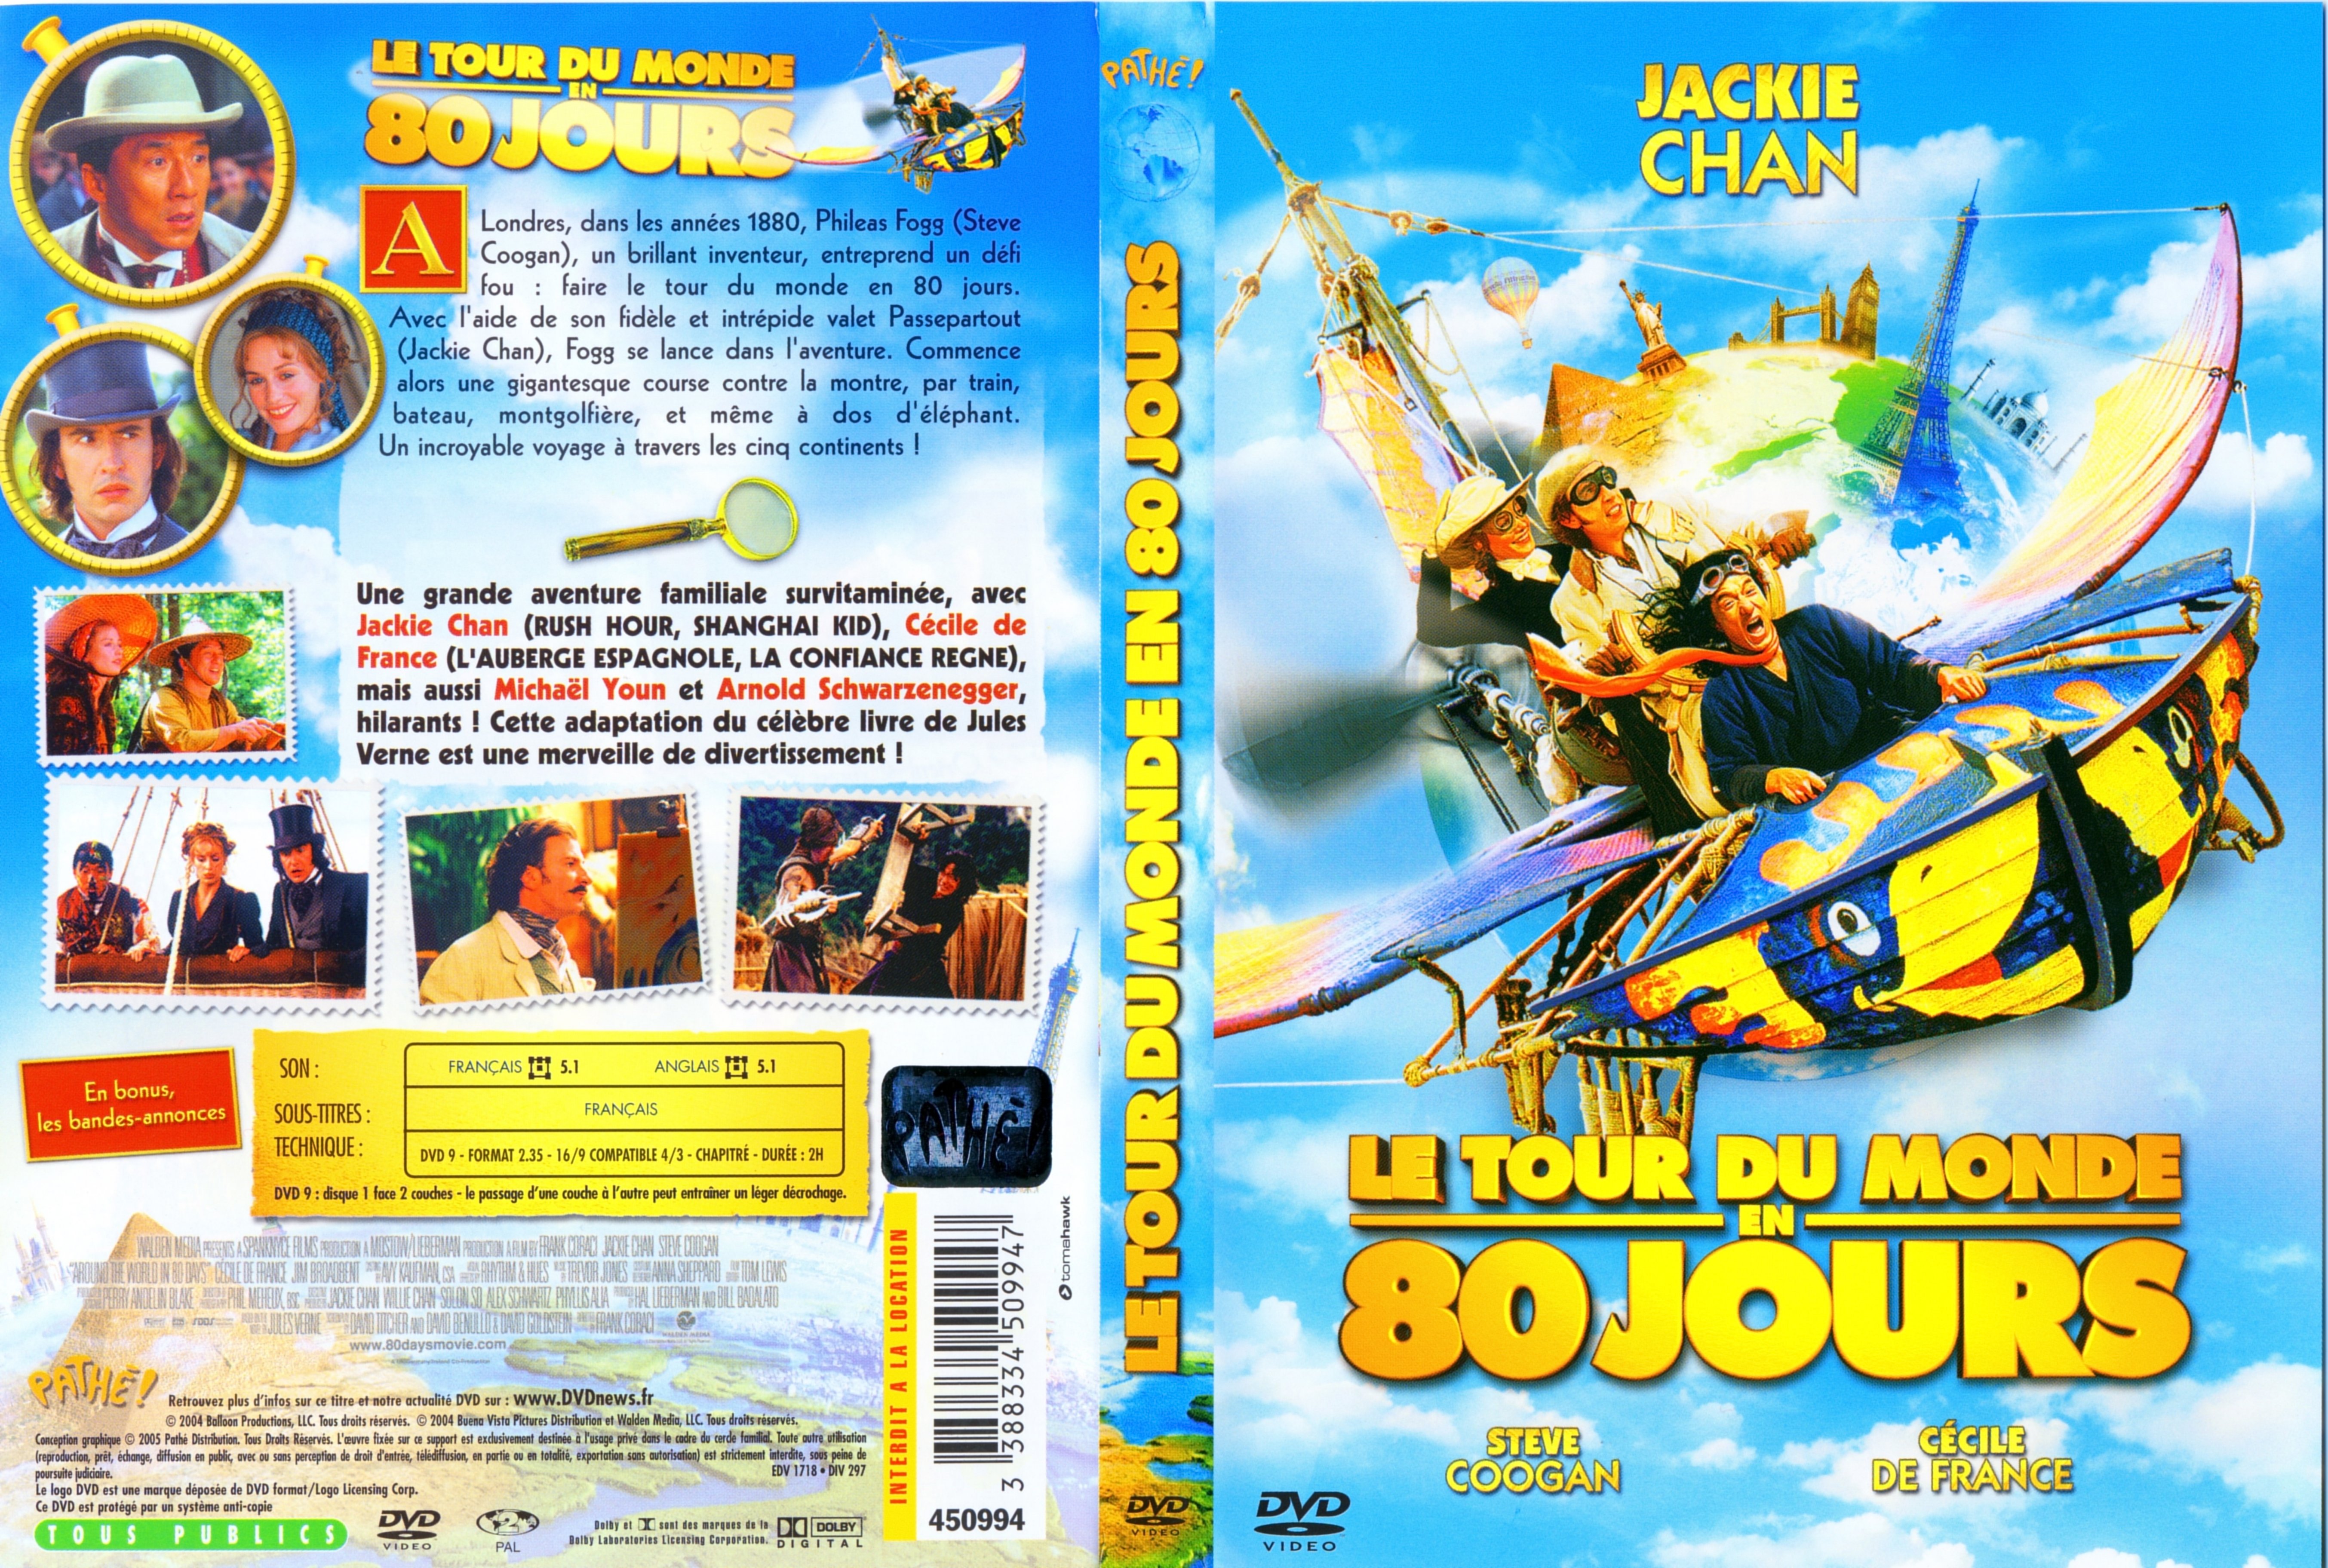 Jaquette DVD Le tour du monde en 80 jours 2004 v2